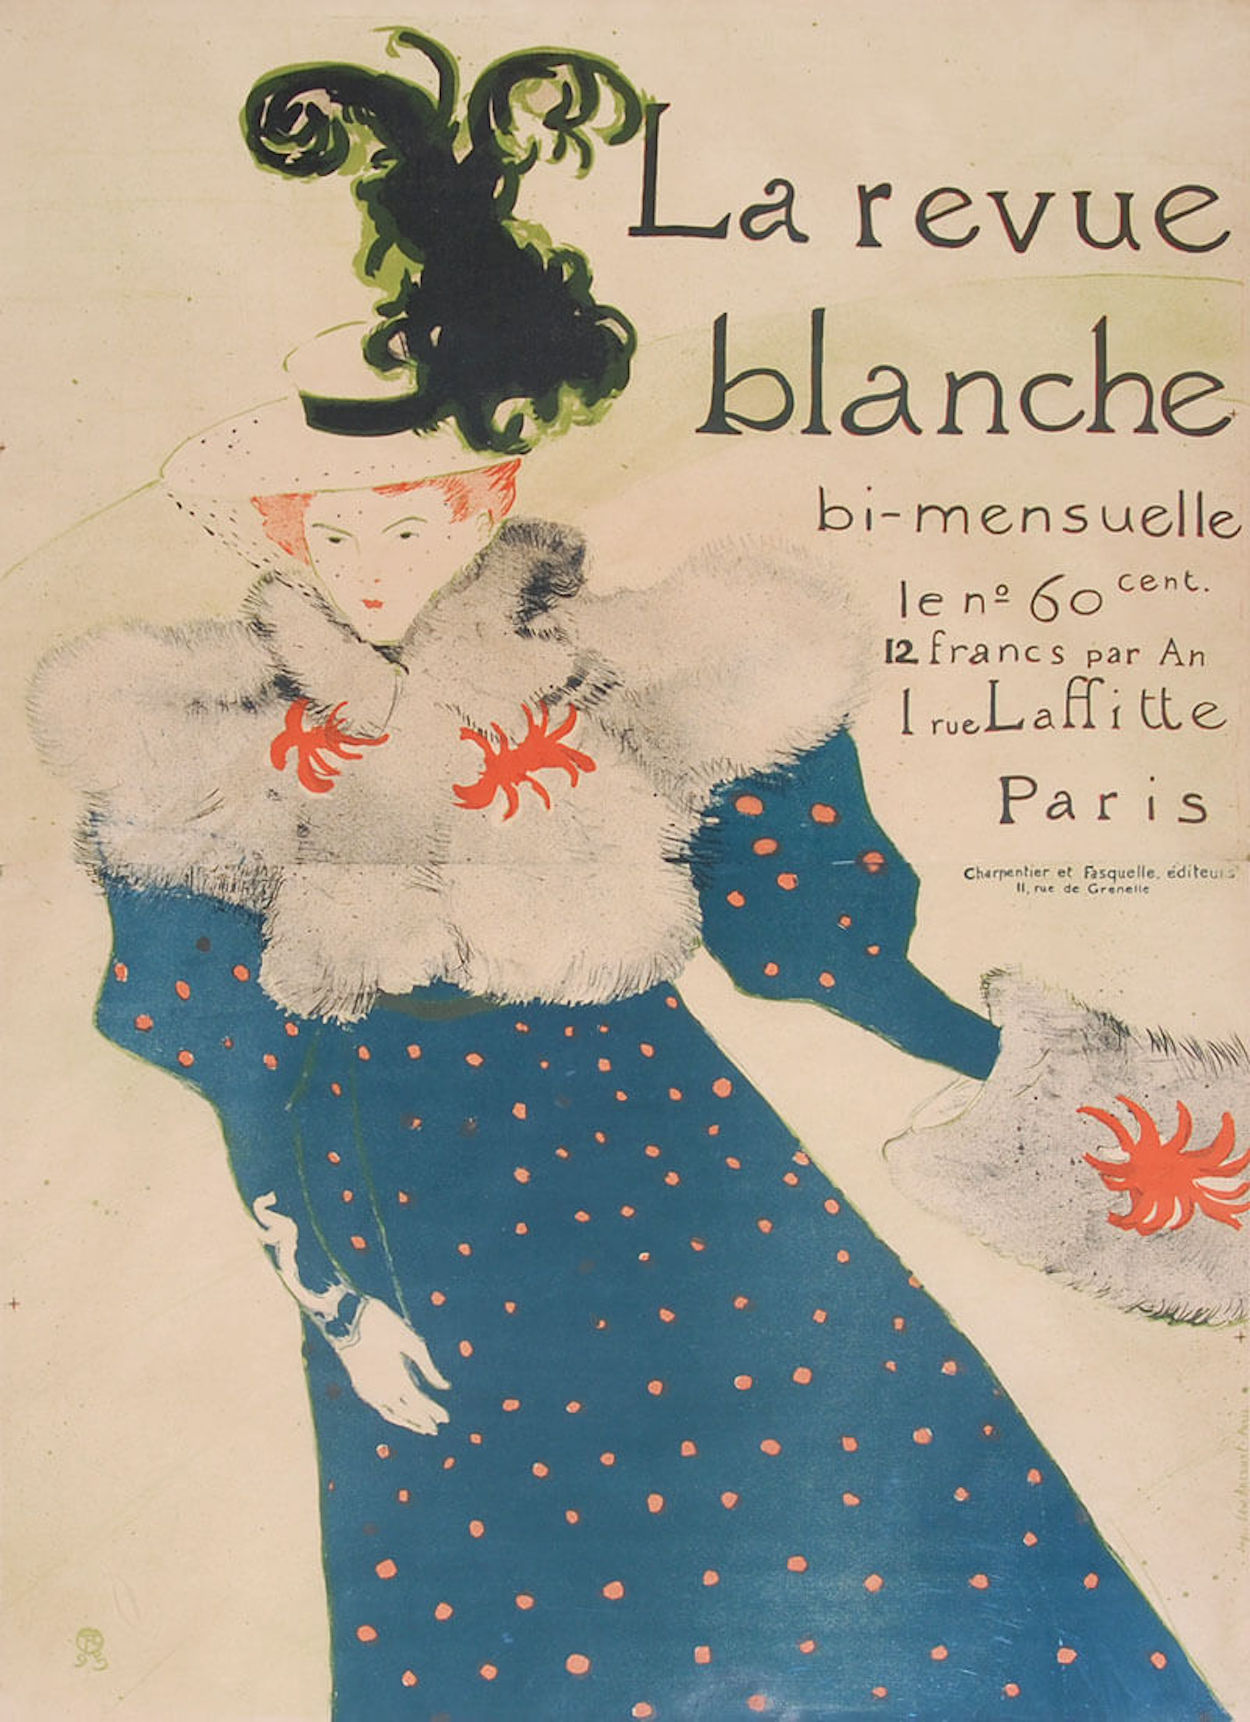 라뤼브 블라쉬 잡지(La Revue Blanche) 포스터 by Henri de Toulouse-Lautrec - 1895 - 91.2 x 125.5 cm 